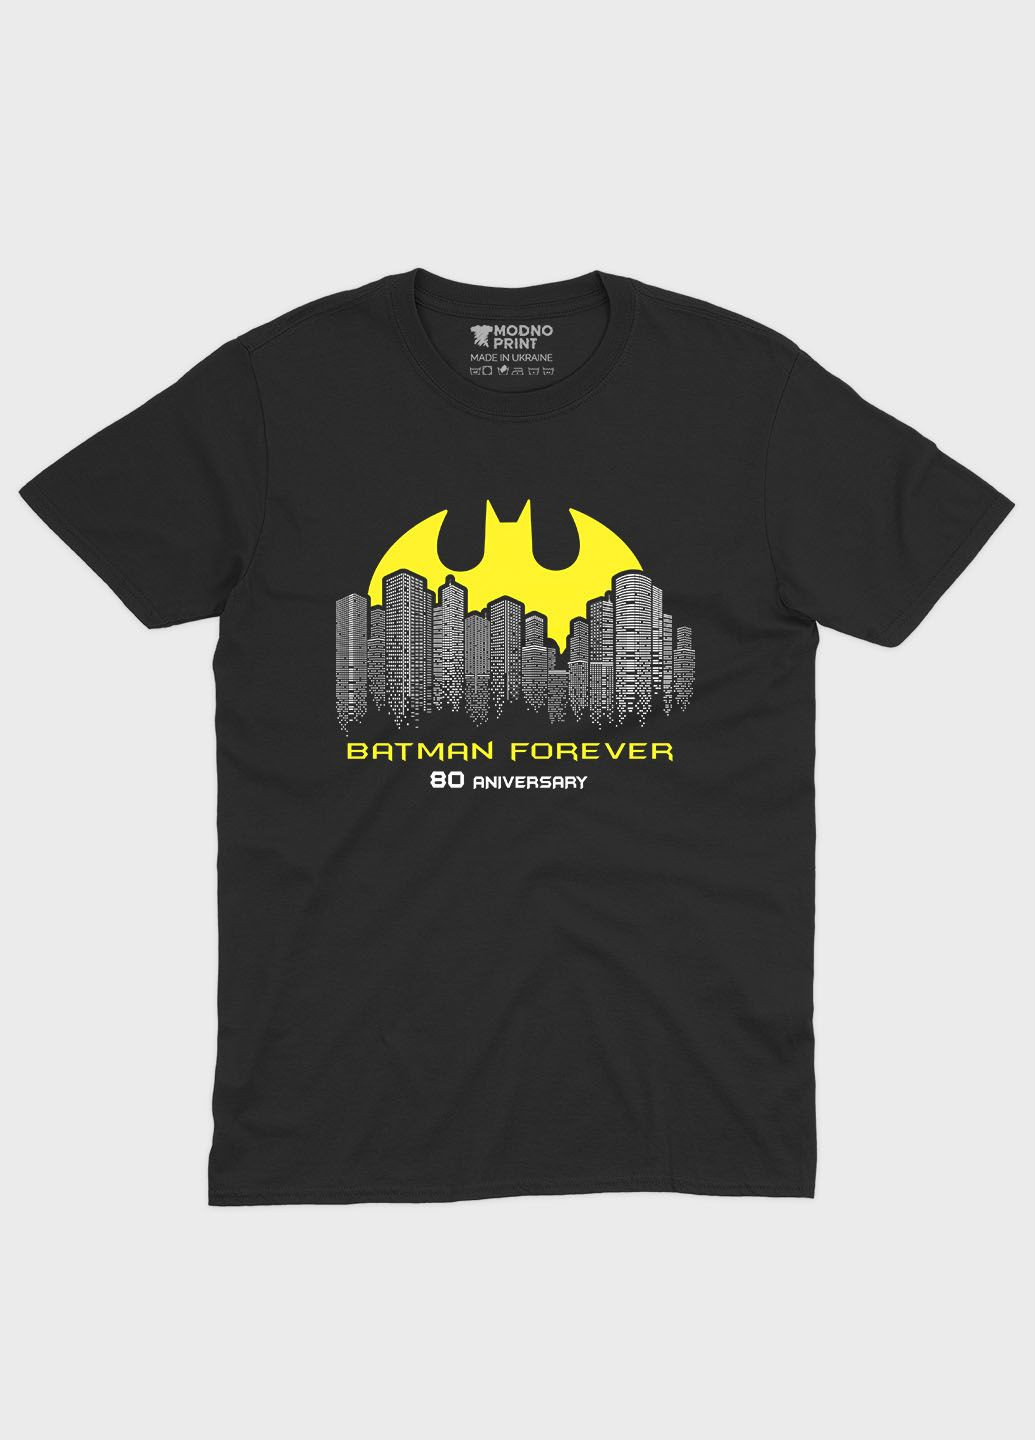 Черная демисезонная футболка для мальчика с принтом супергероя - бэтмен (ts001-1-bl-006-003-036-b) Modno